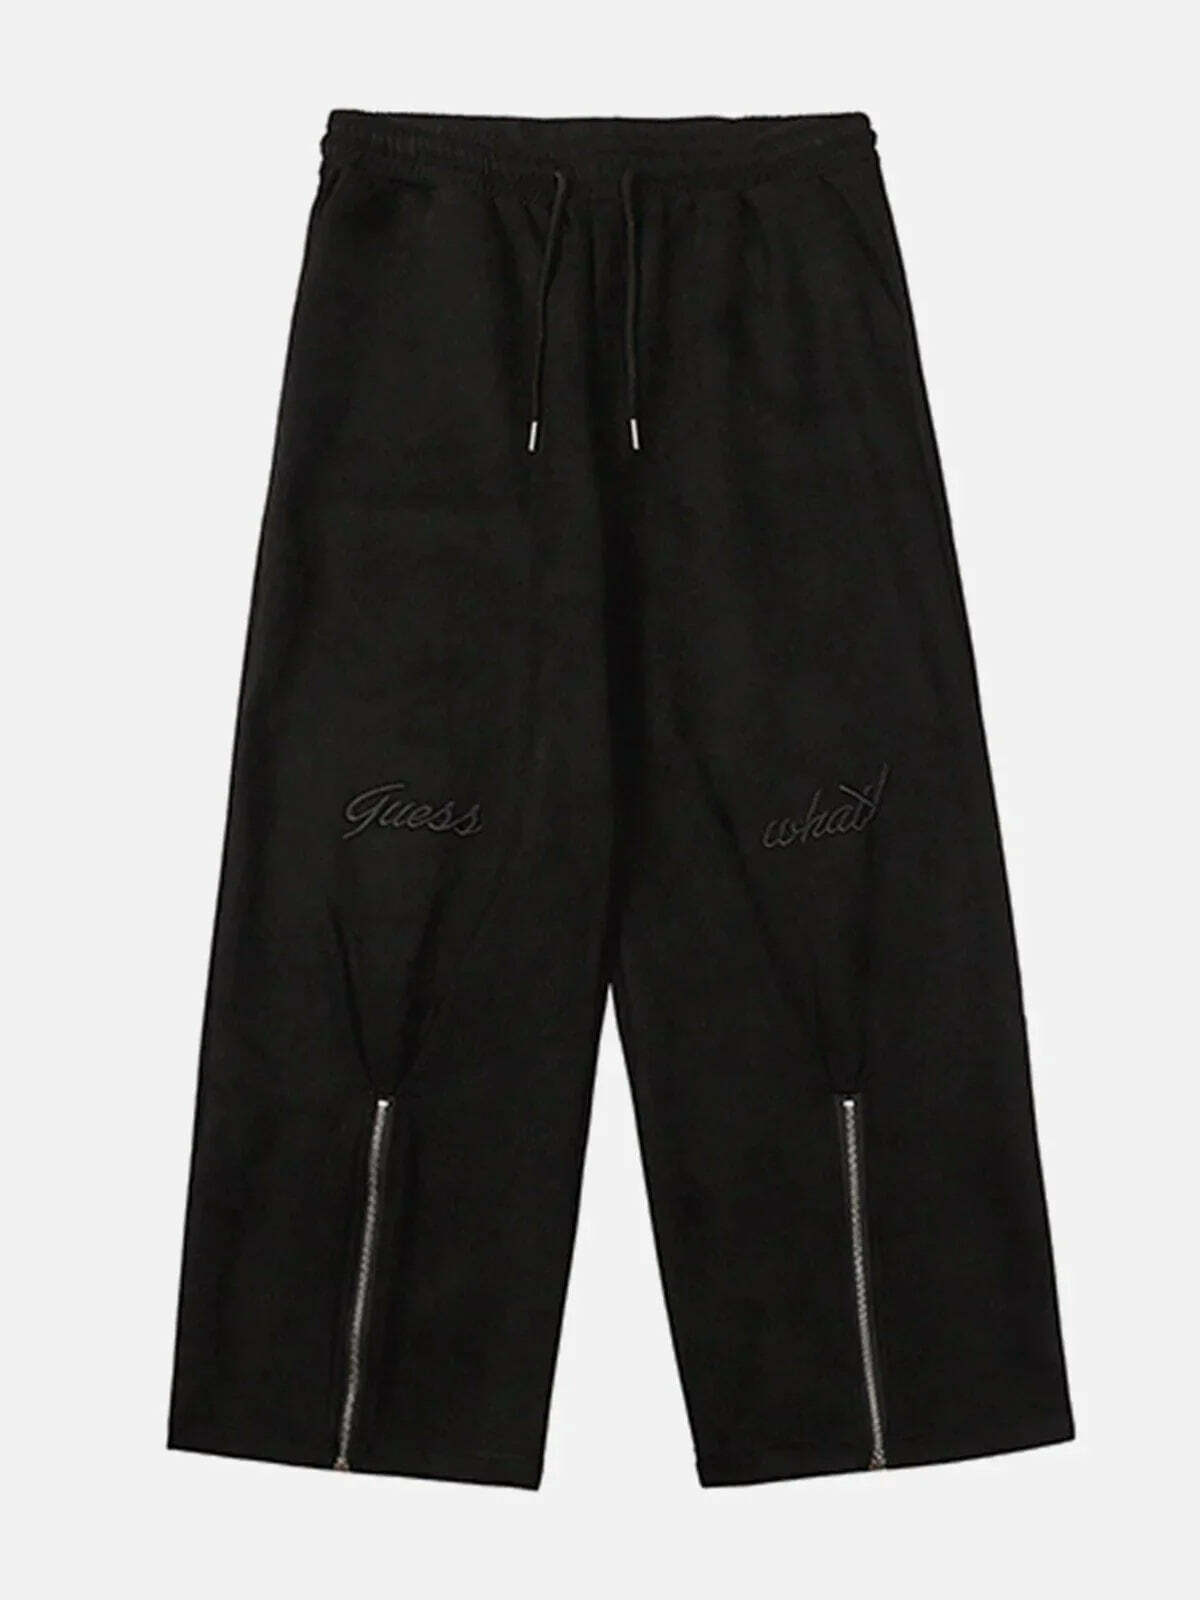 zipup suede cargo pants edgy streetwear essential 1989